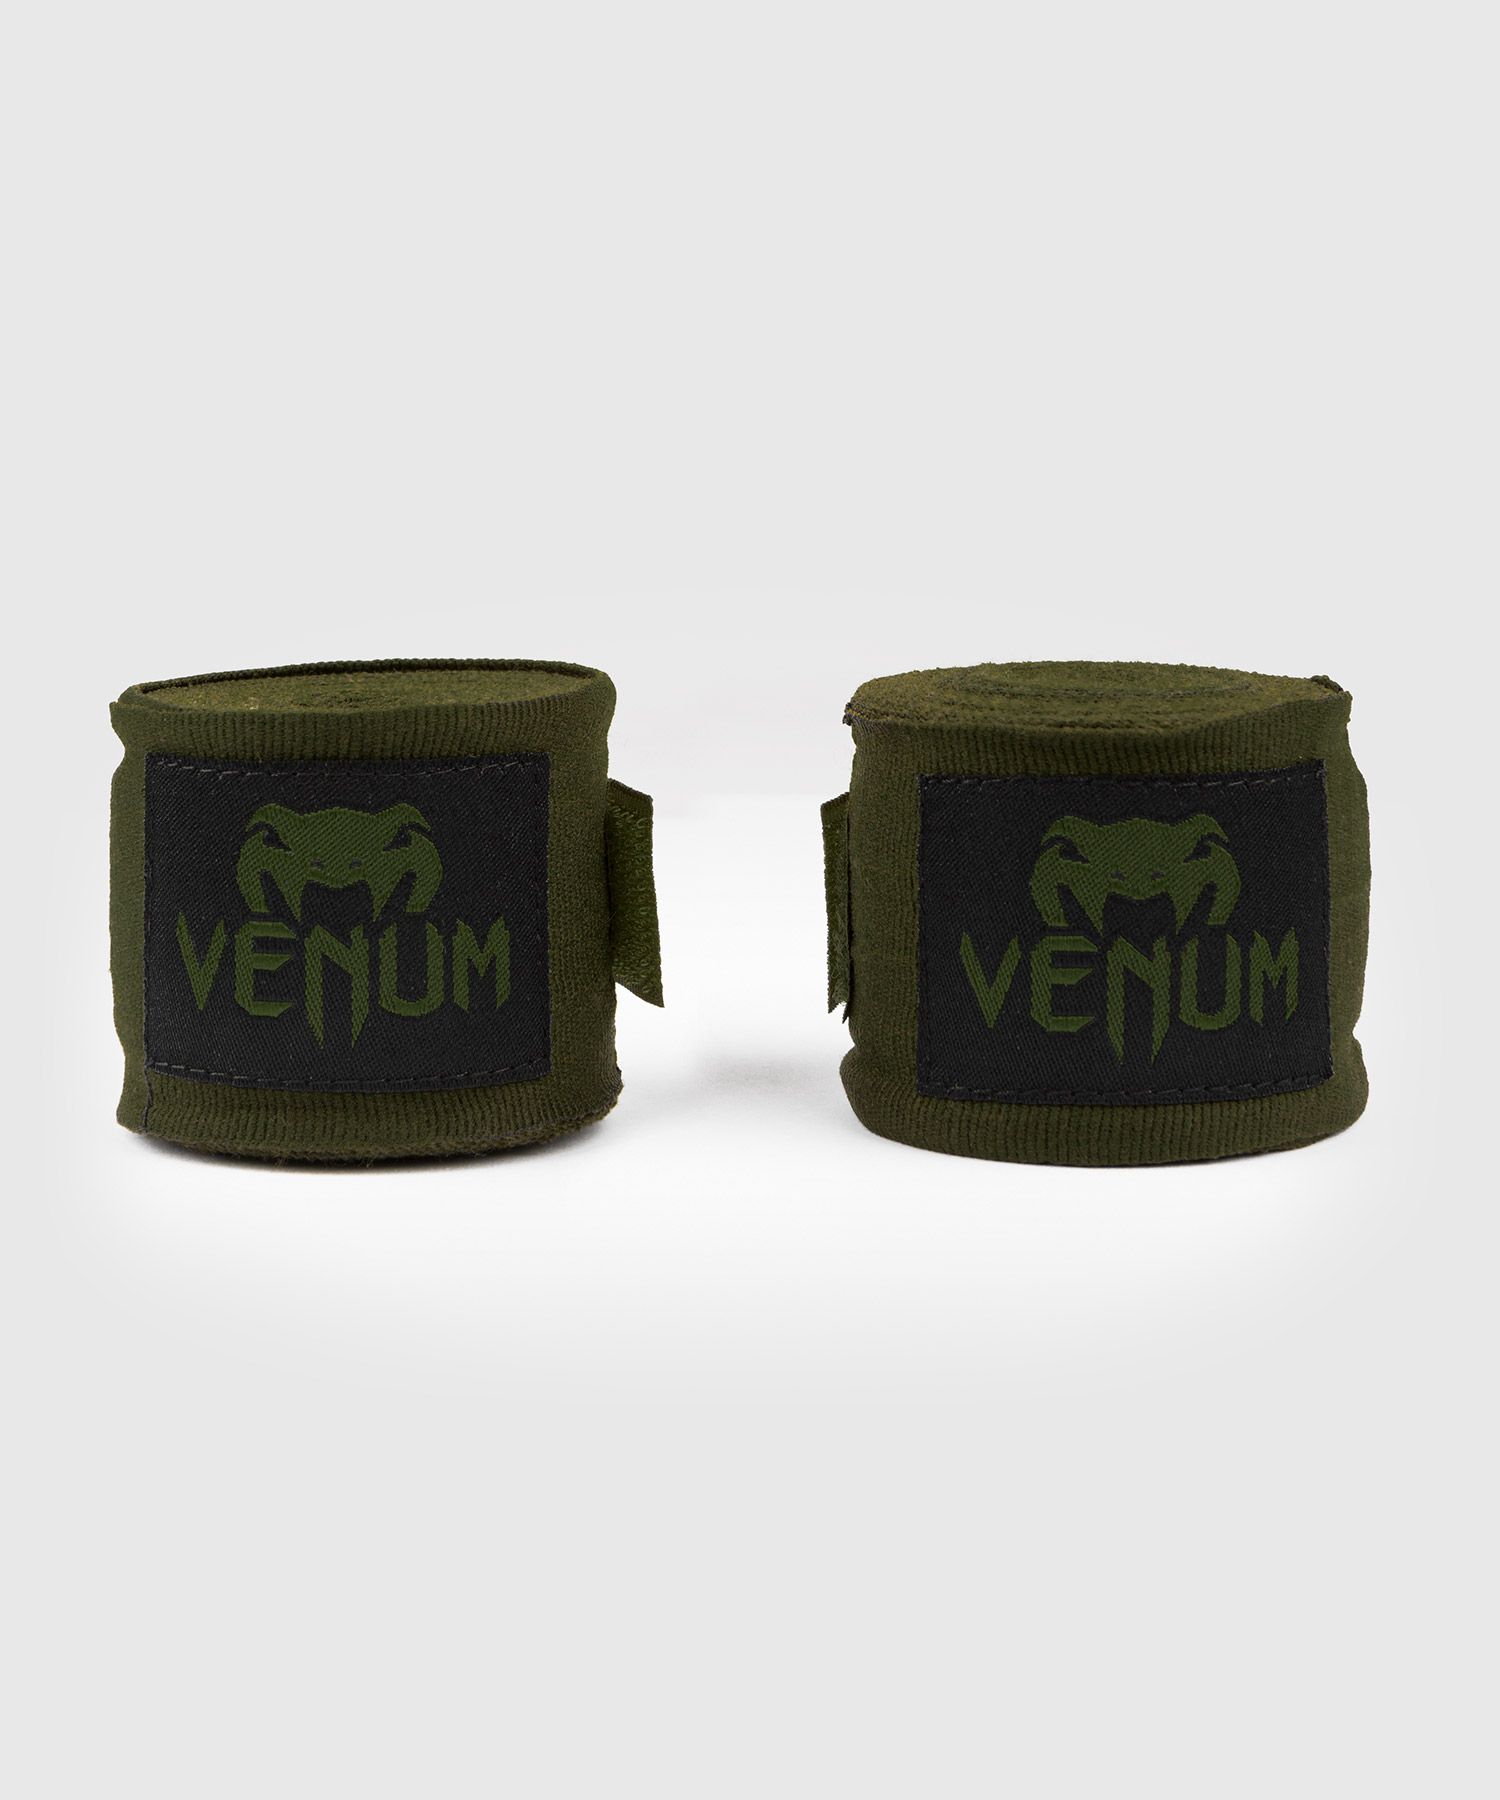 Bandages de Boxe Venum Kontact - 4.50 m - Kaki/Noir